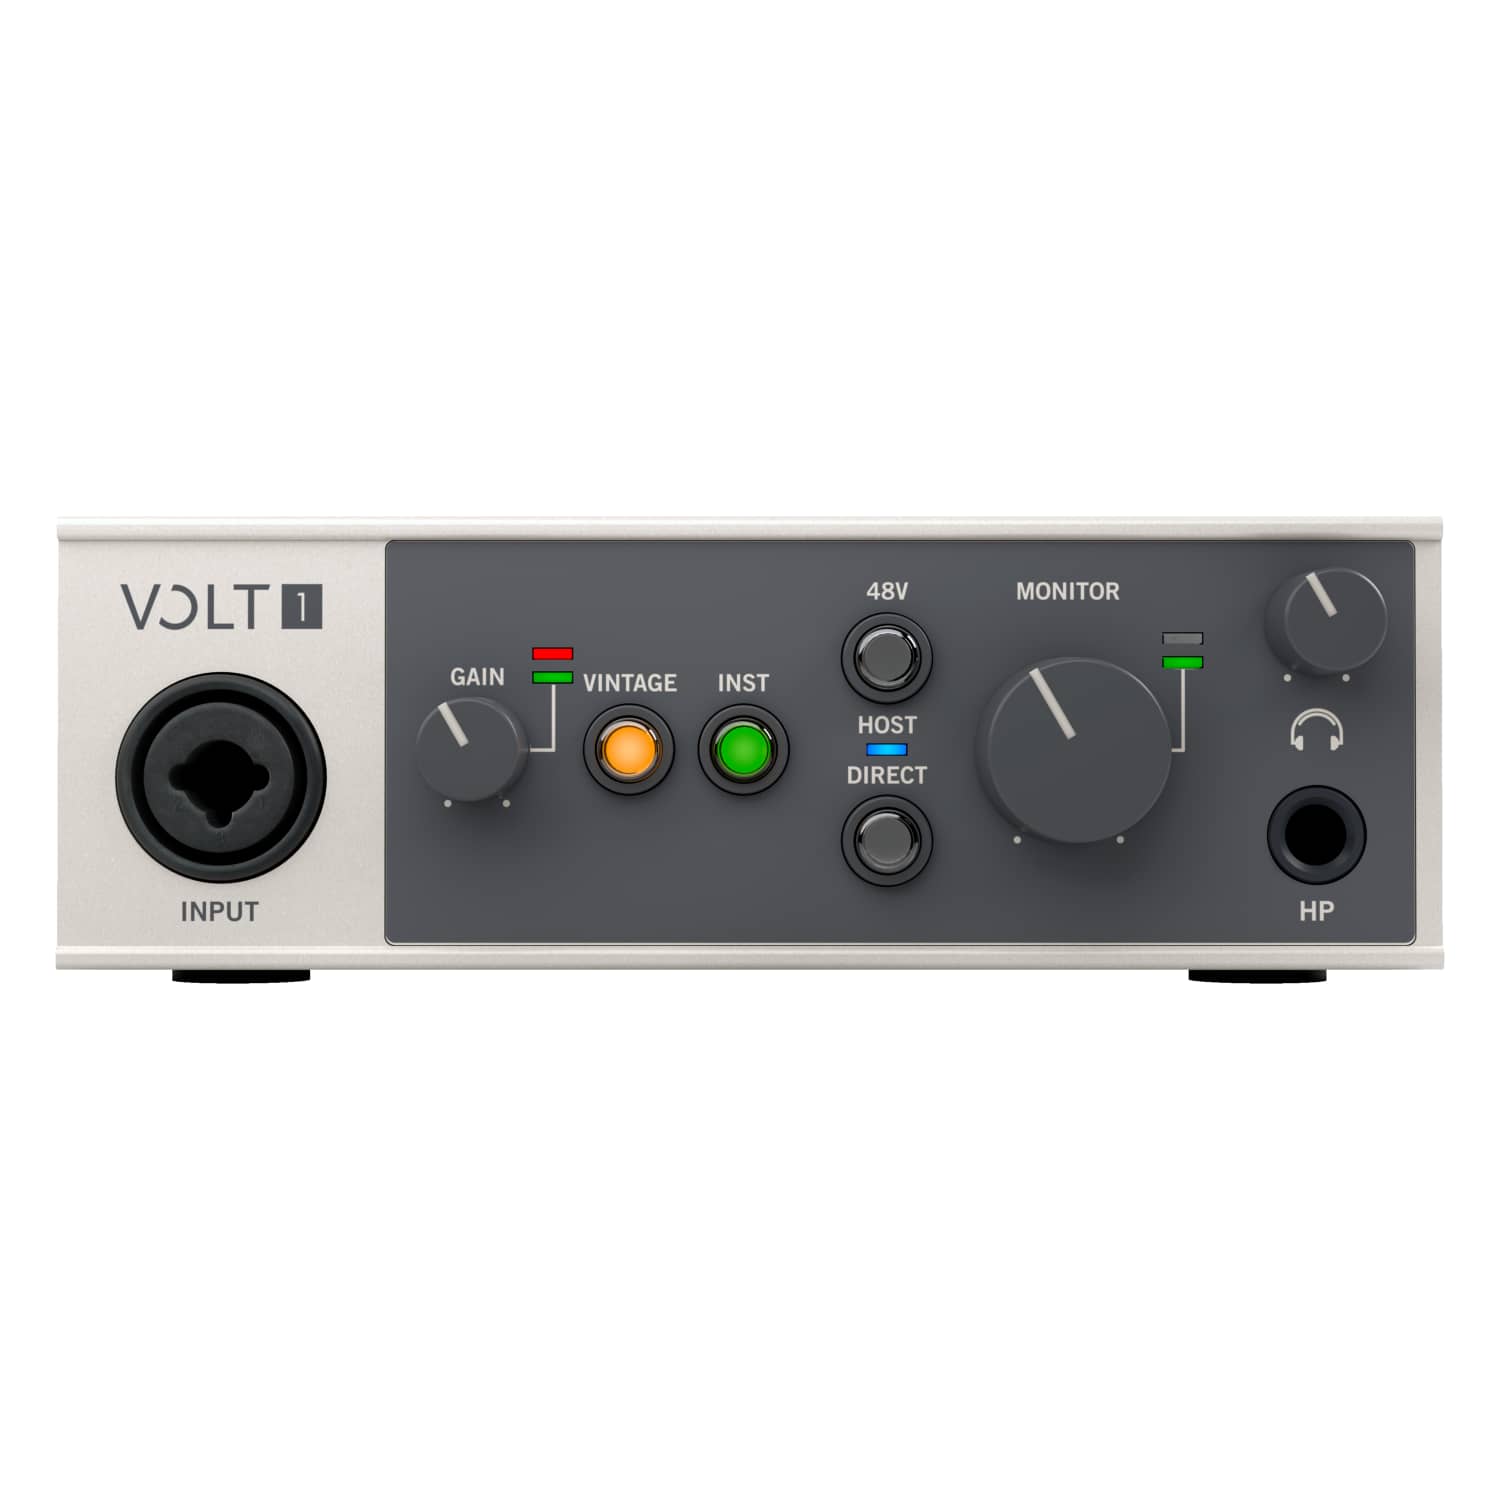 BJs Sound & Lighting - Volt 1 R2 F Front transp bjs web